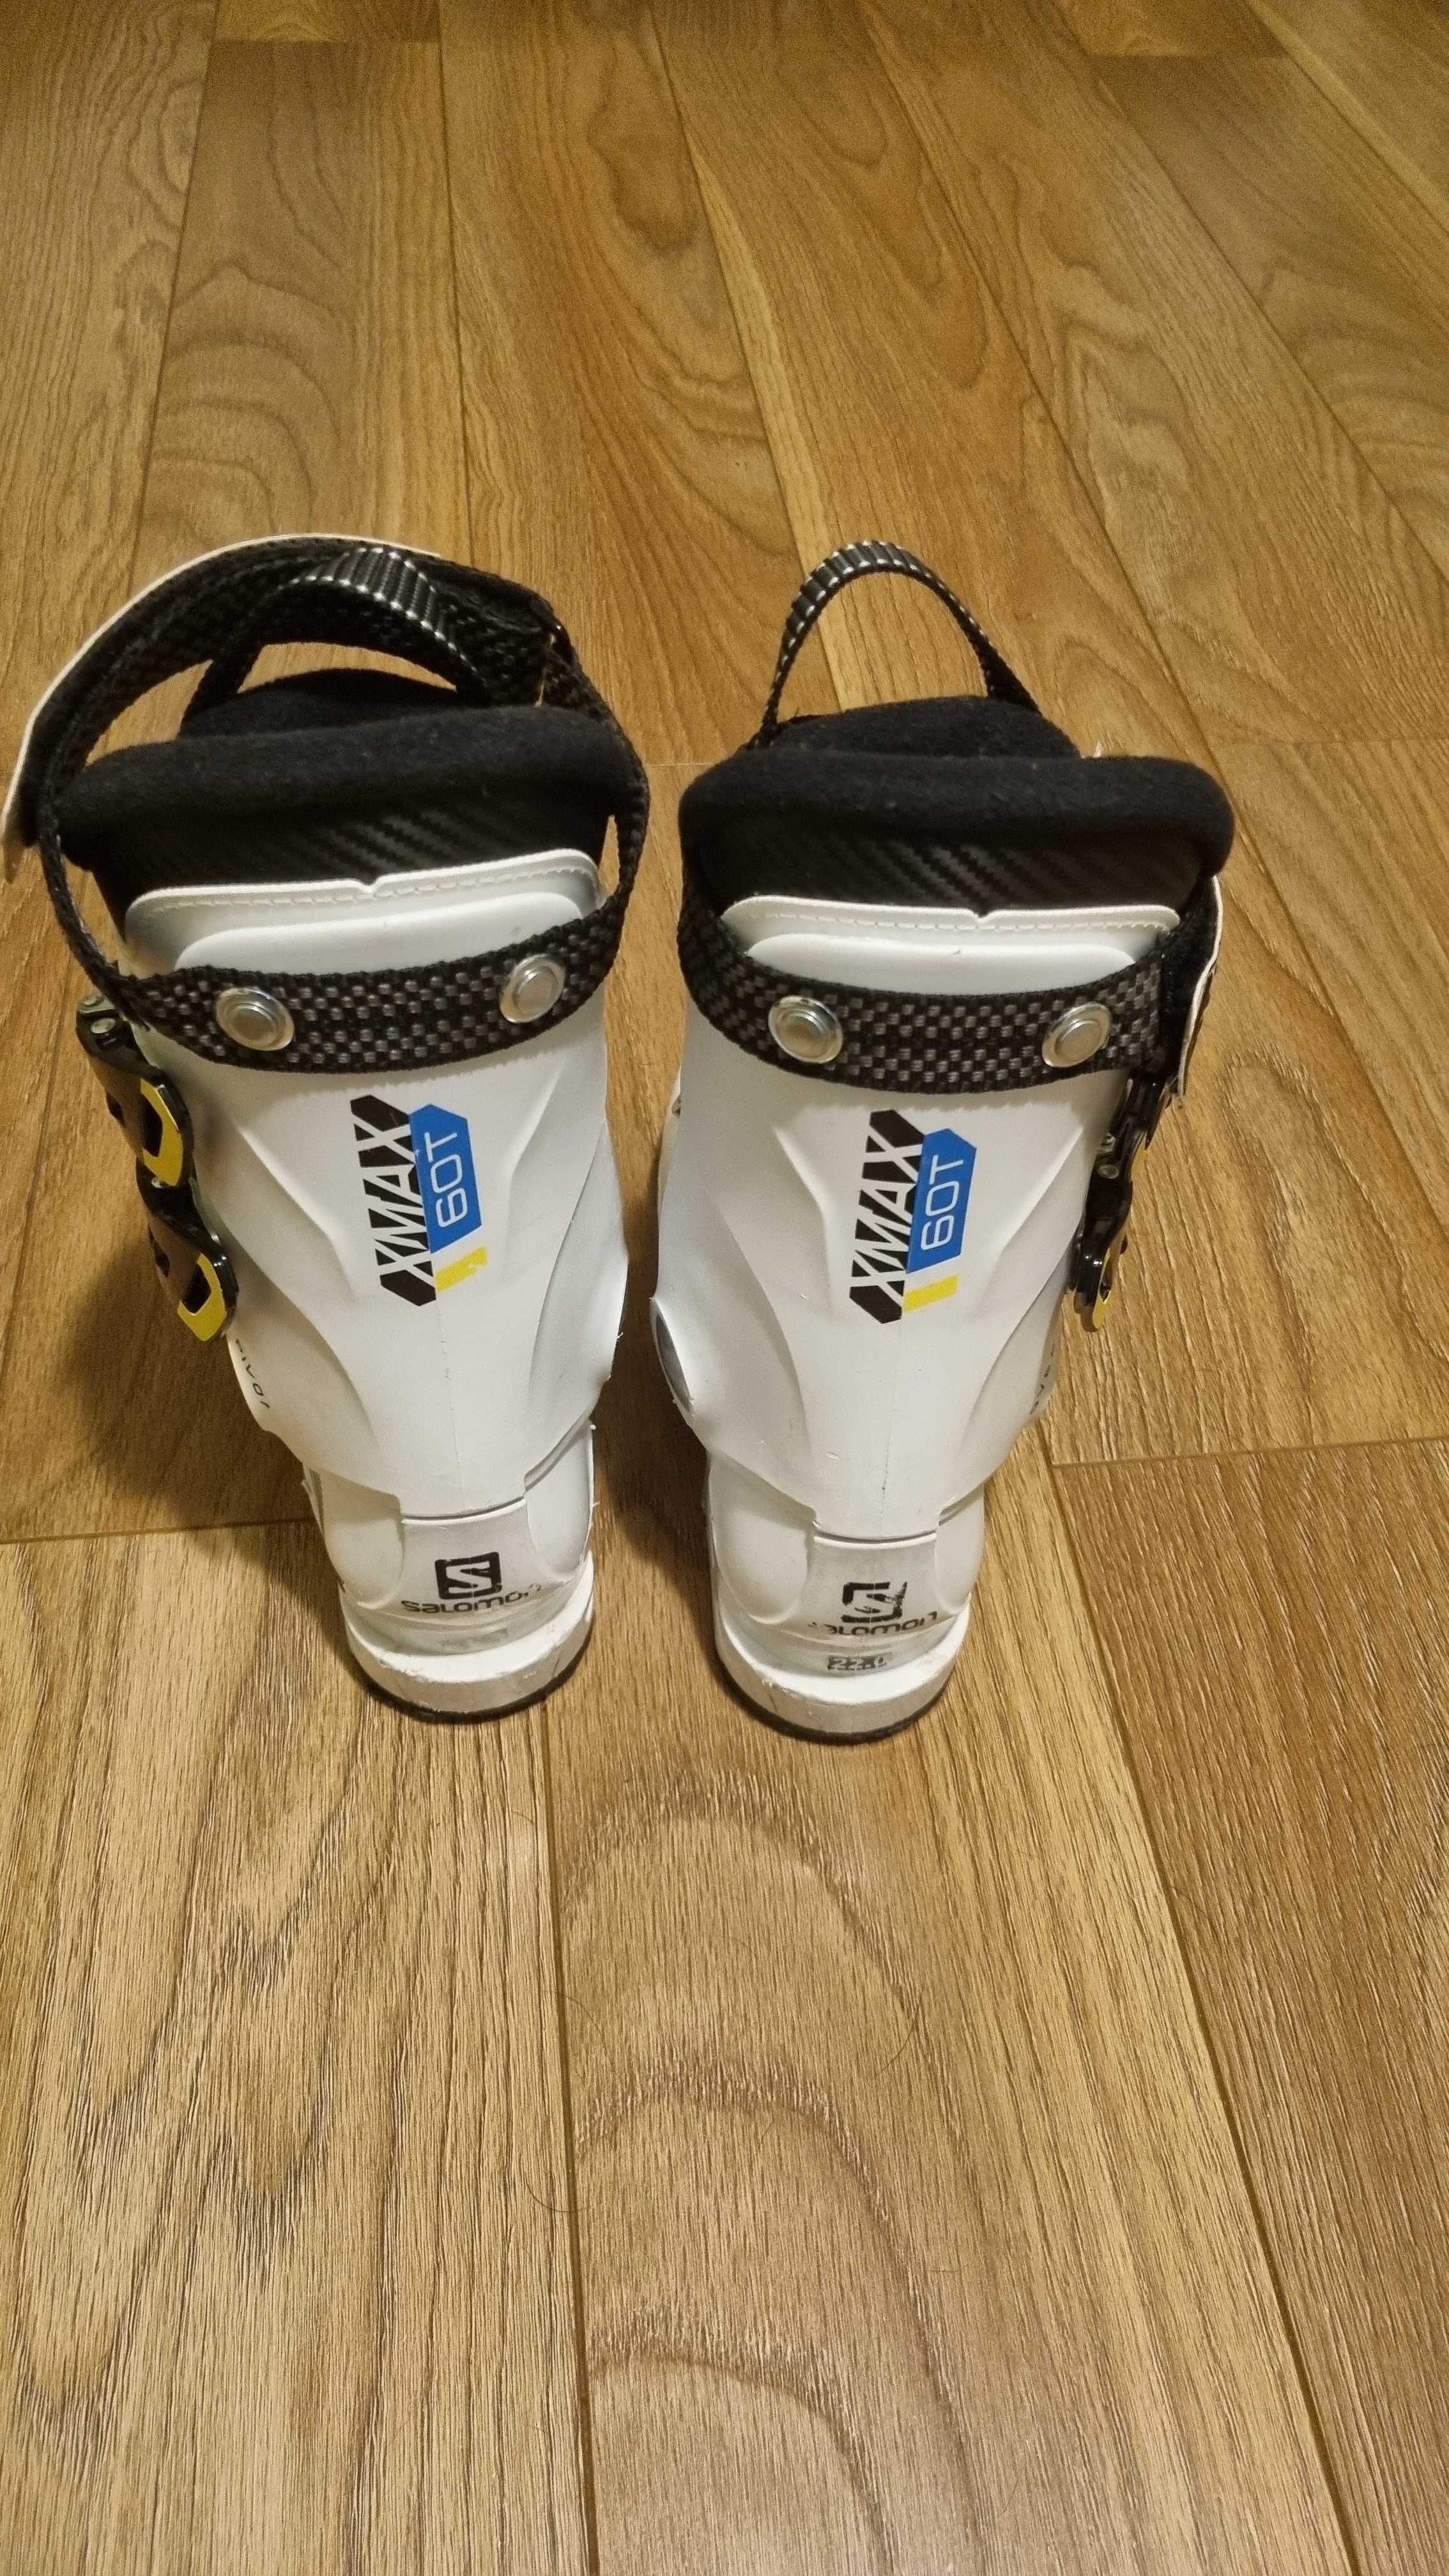 Buty narciarskie Salomon Xmax 60t rozmiar 22.0